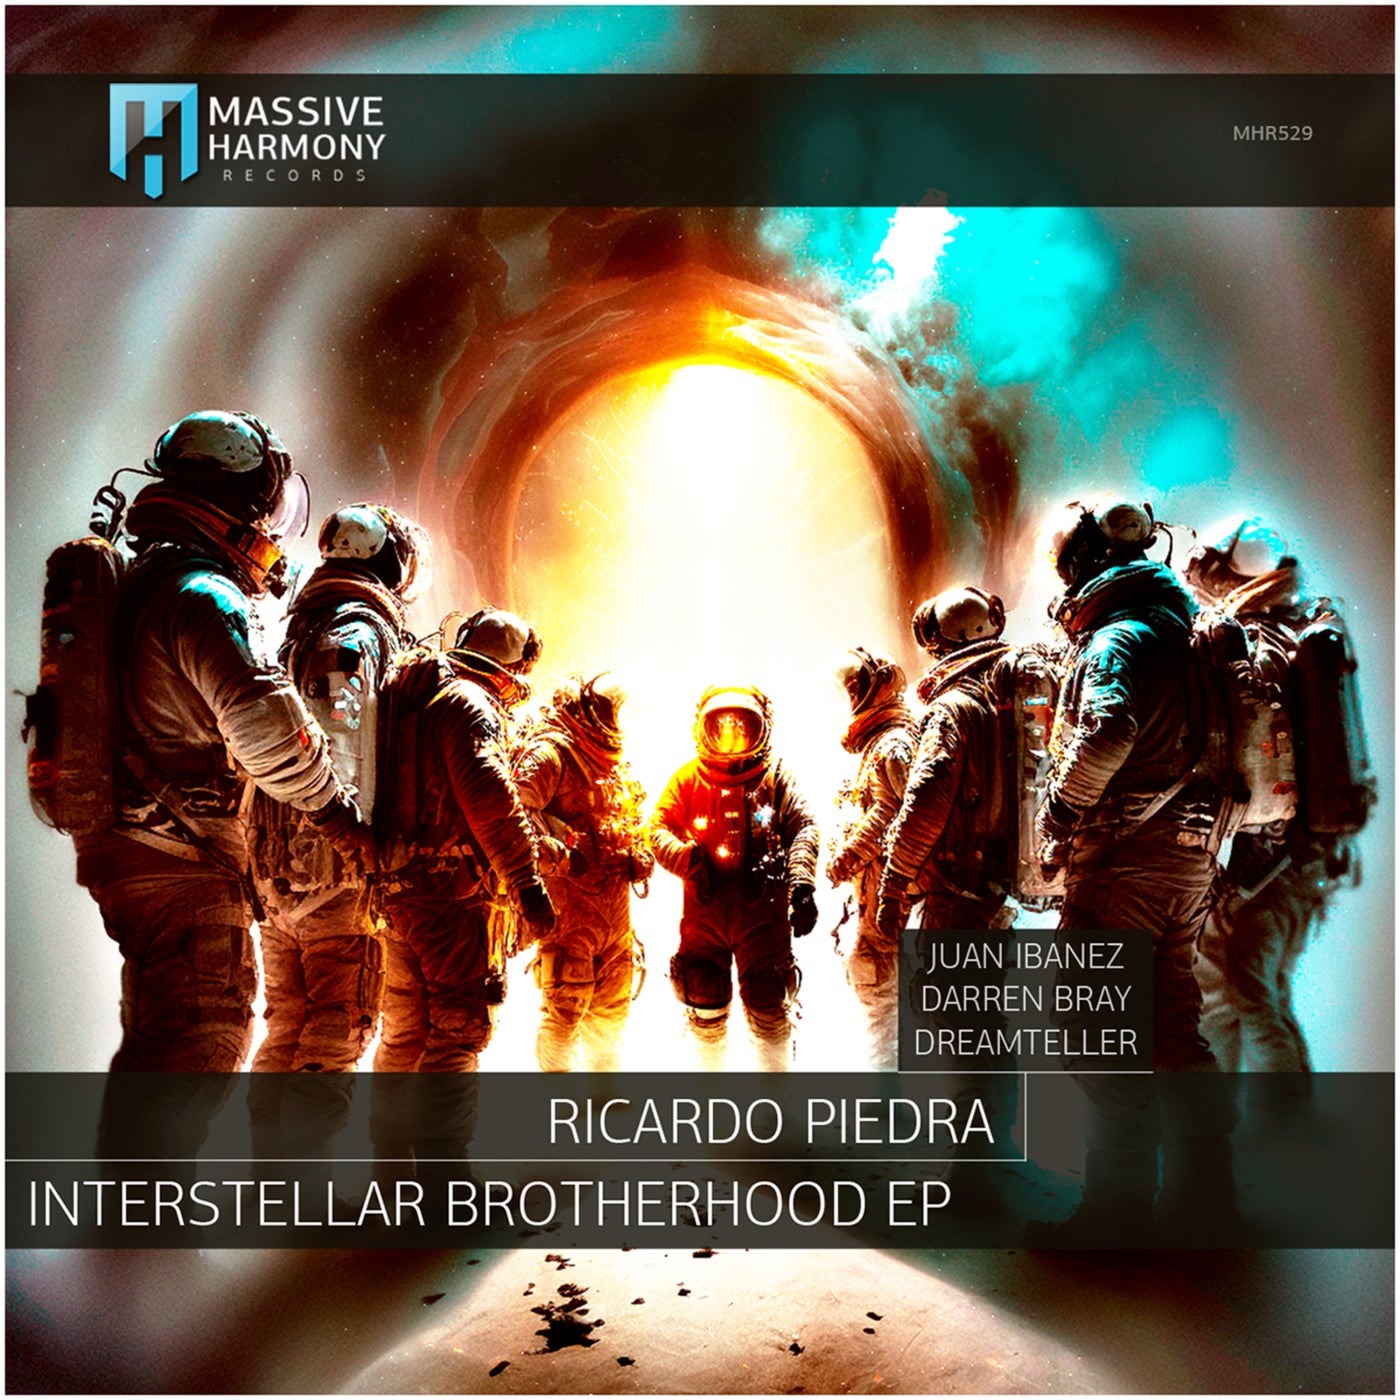 Ricardo Piedra, Dreamteller – Interstellar Brotherhood [MHR529]